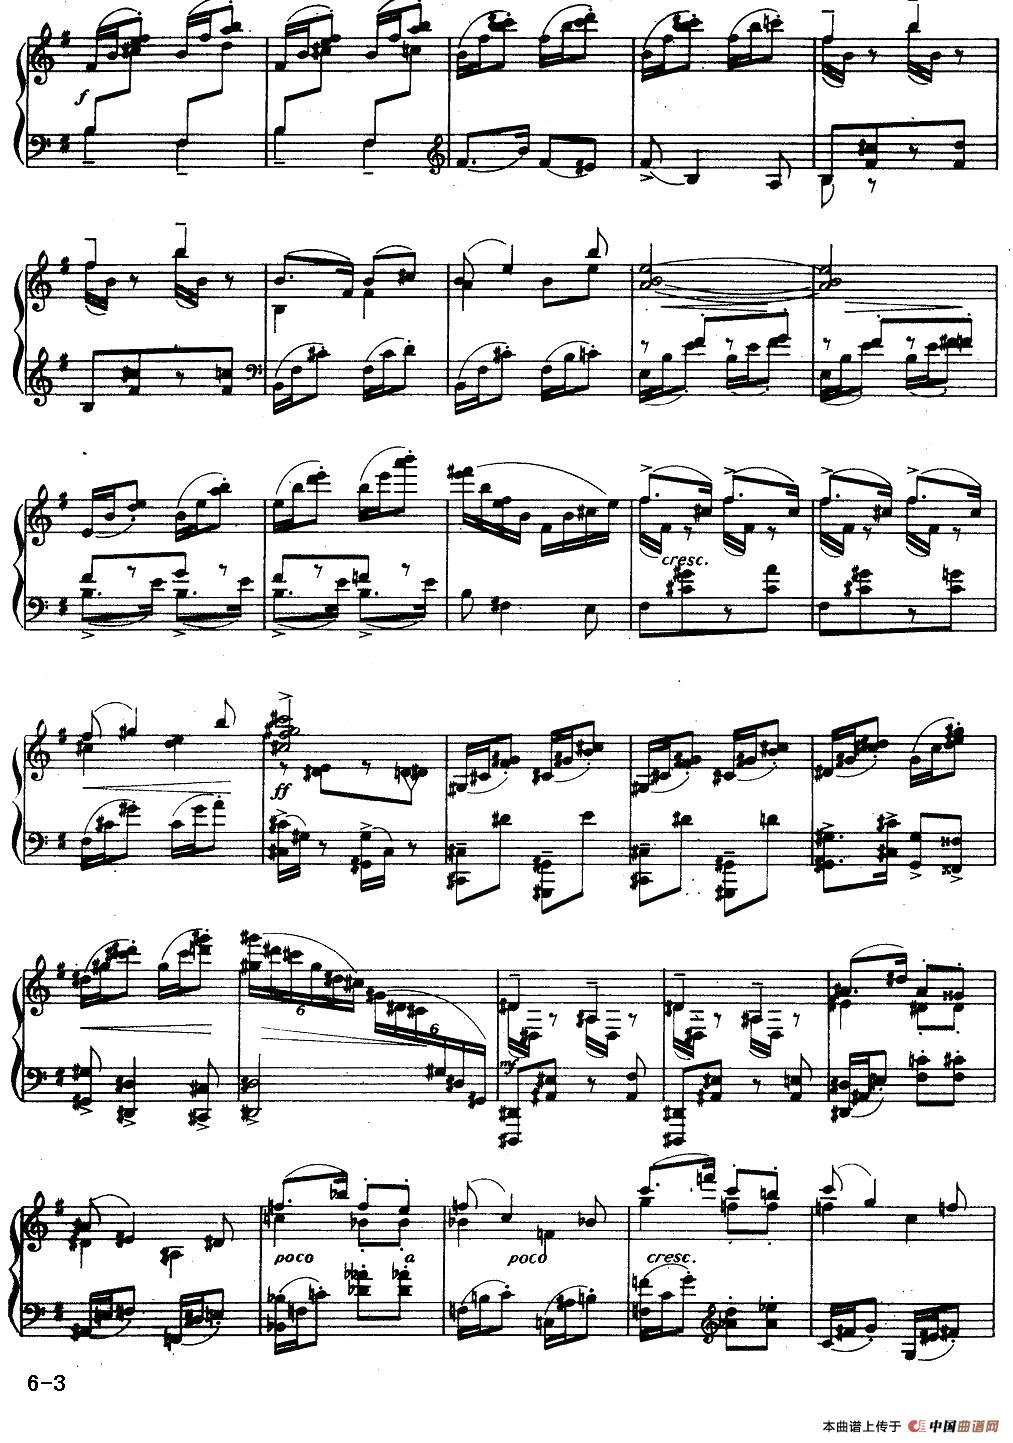 《一根扁担》钢琴曲谱图分享